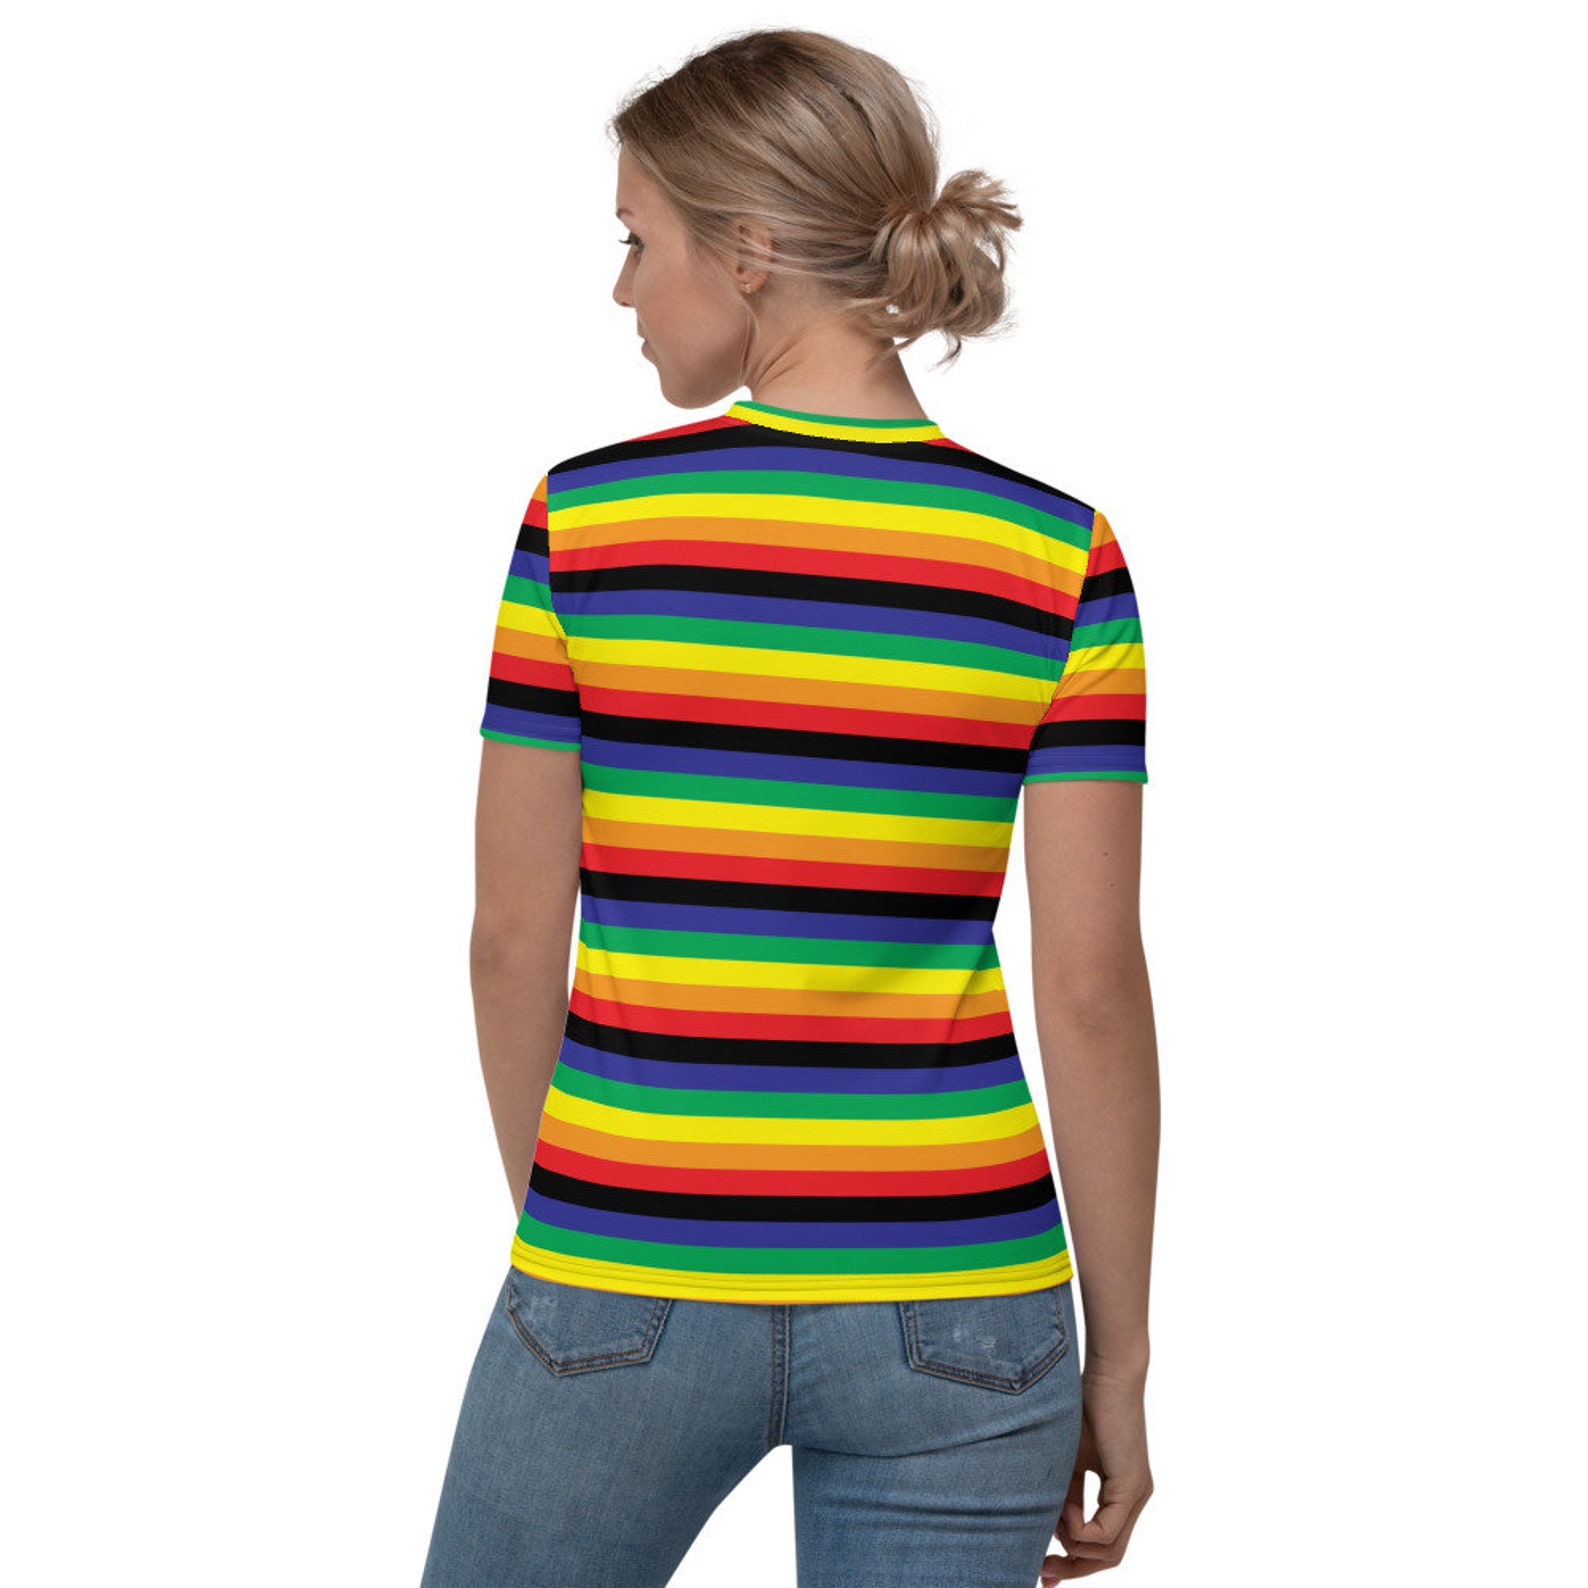 Rainbow Shirt Women's V-neck T-shirt. Retro Rainbow. | Etsy